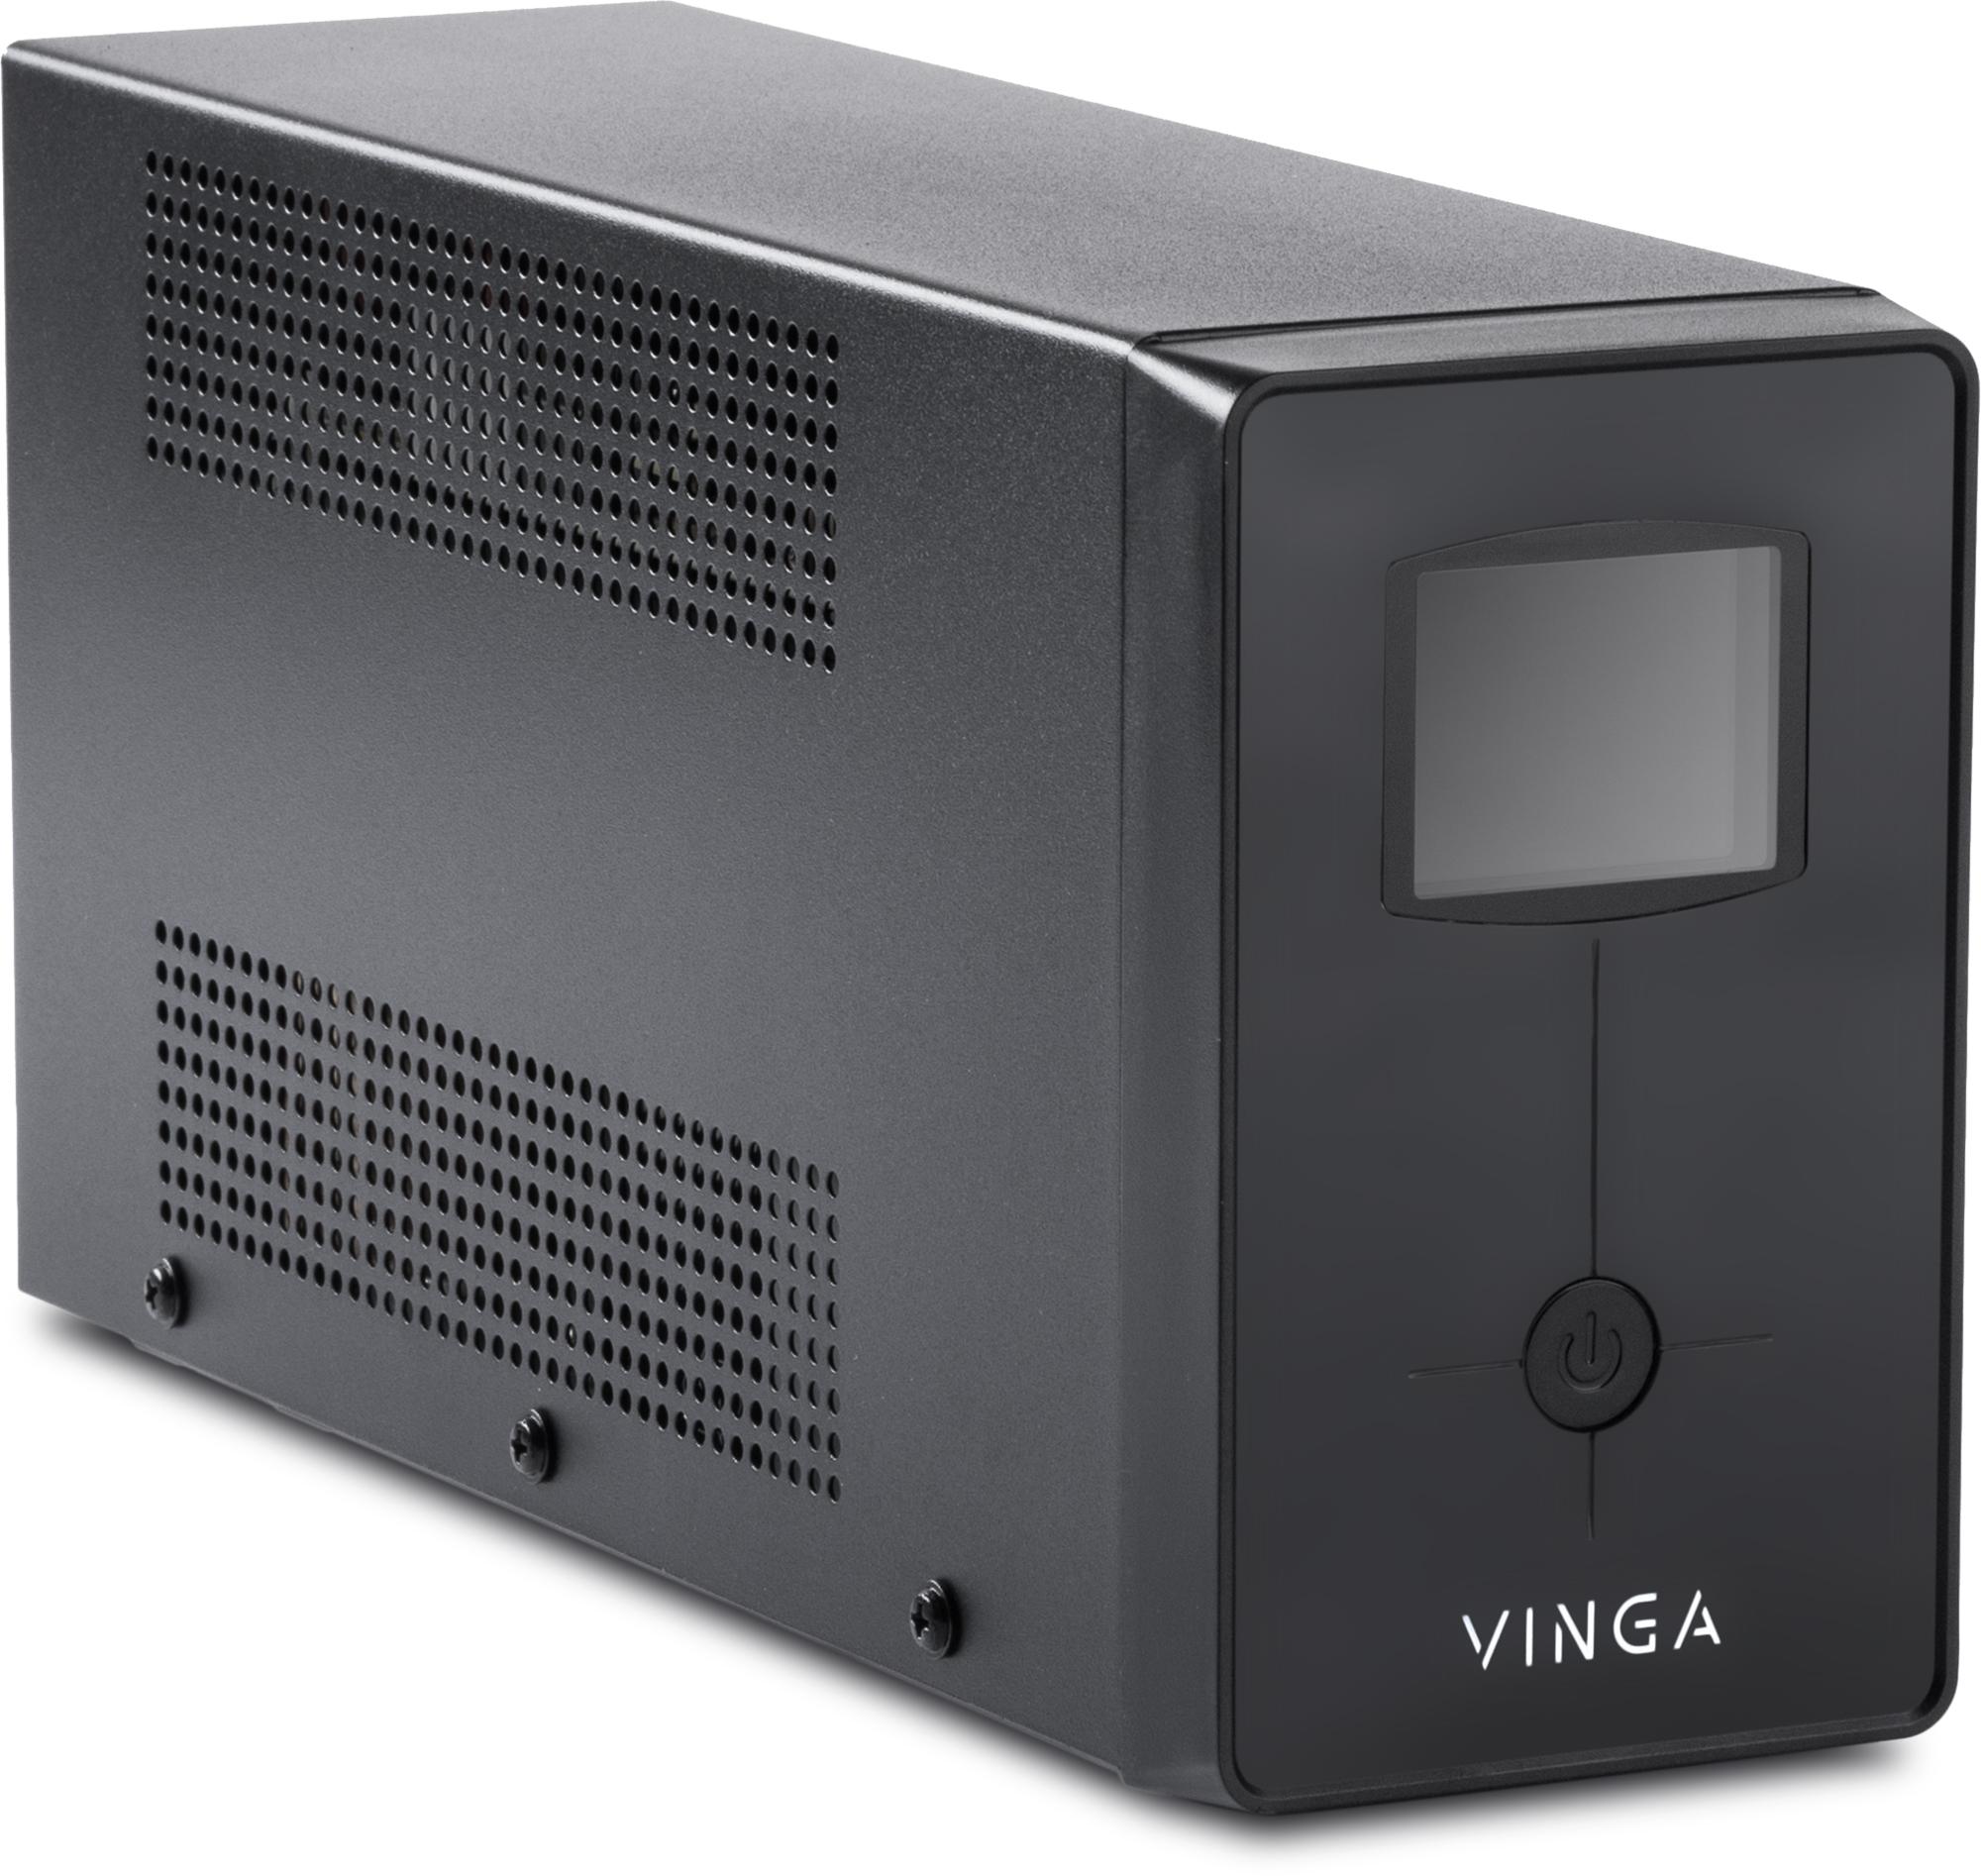 Источник бесперебойного питания Vinga LCD 1200VA (VPC-1200M) отзывы - изображения 5